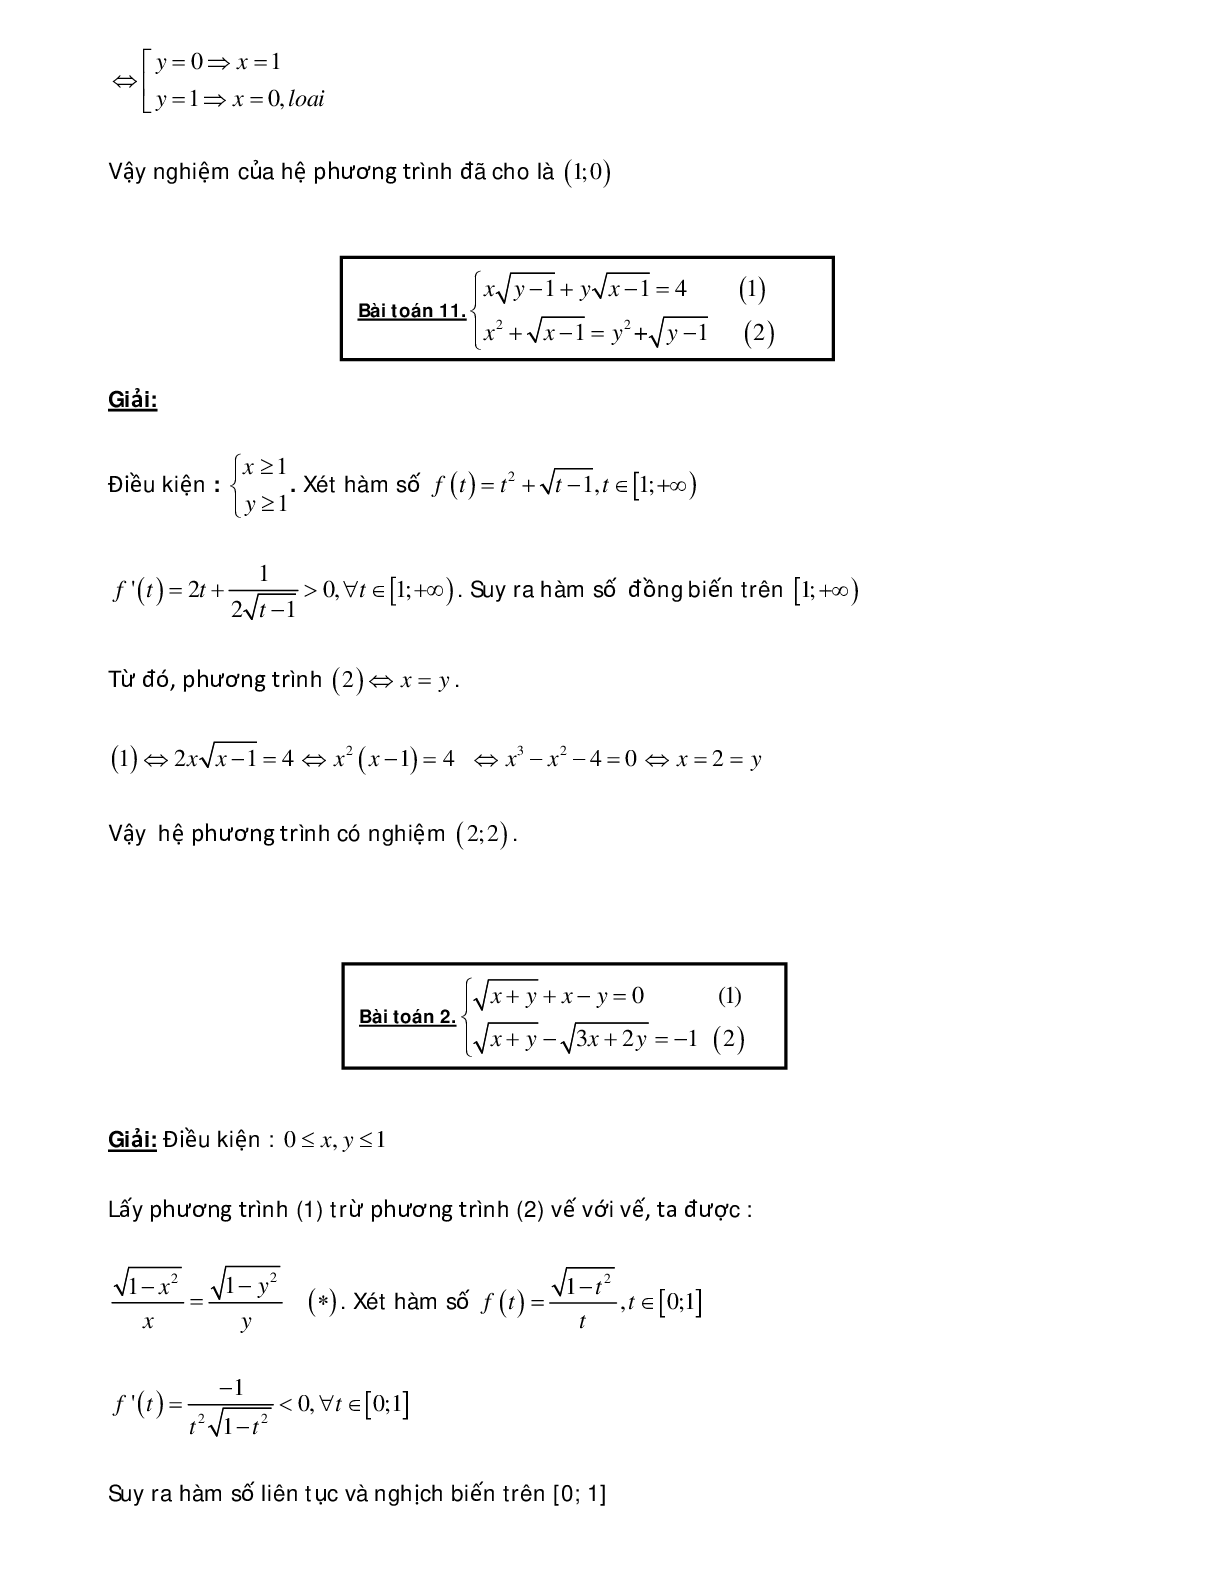 Bài tập sử dụng phương pháp hàm số để giải hệ phương trình - có đáp án chi tiết (trang 2)